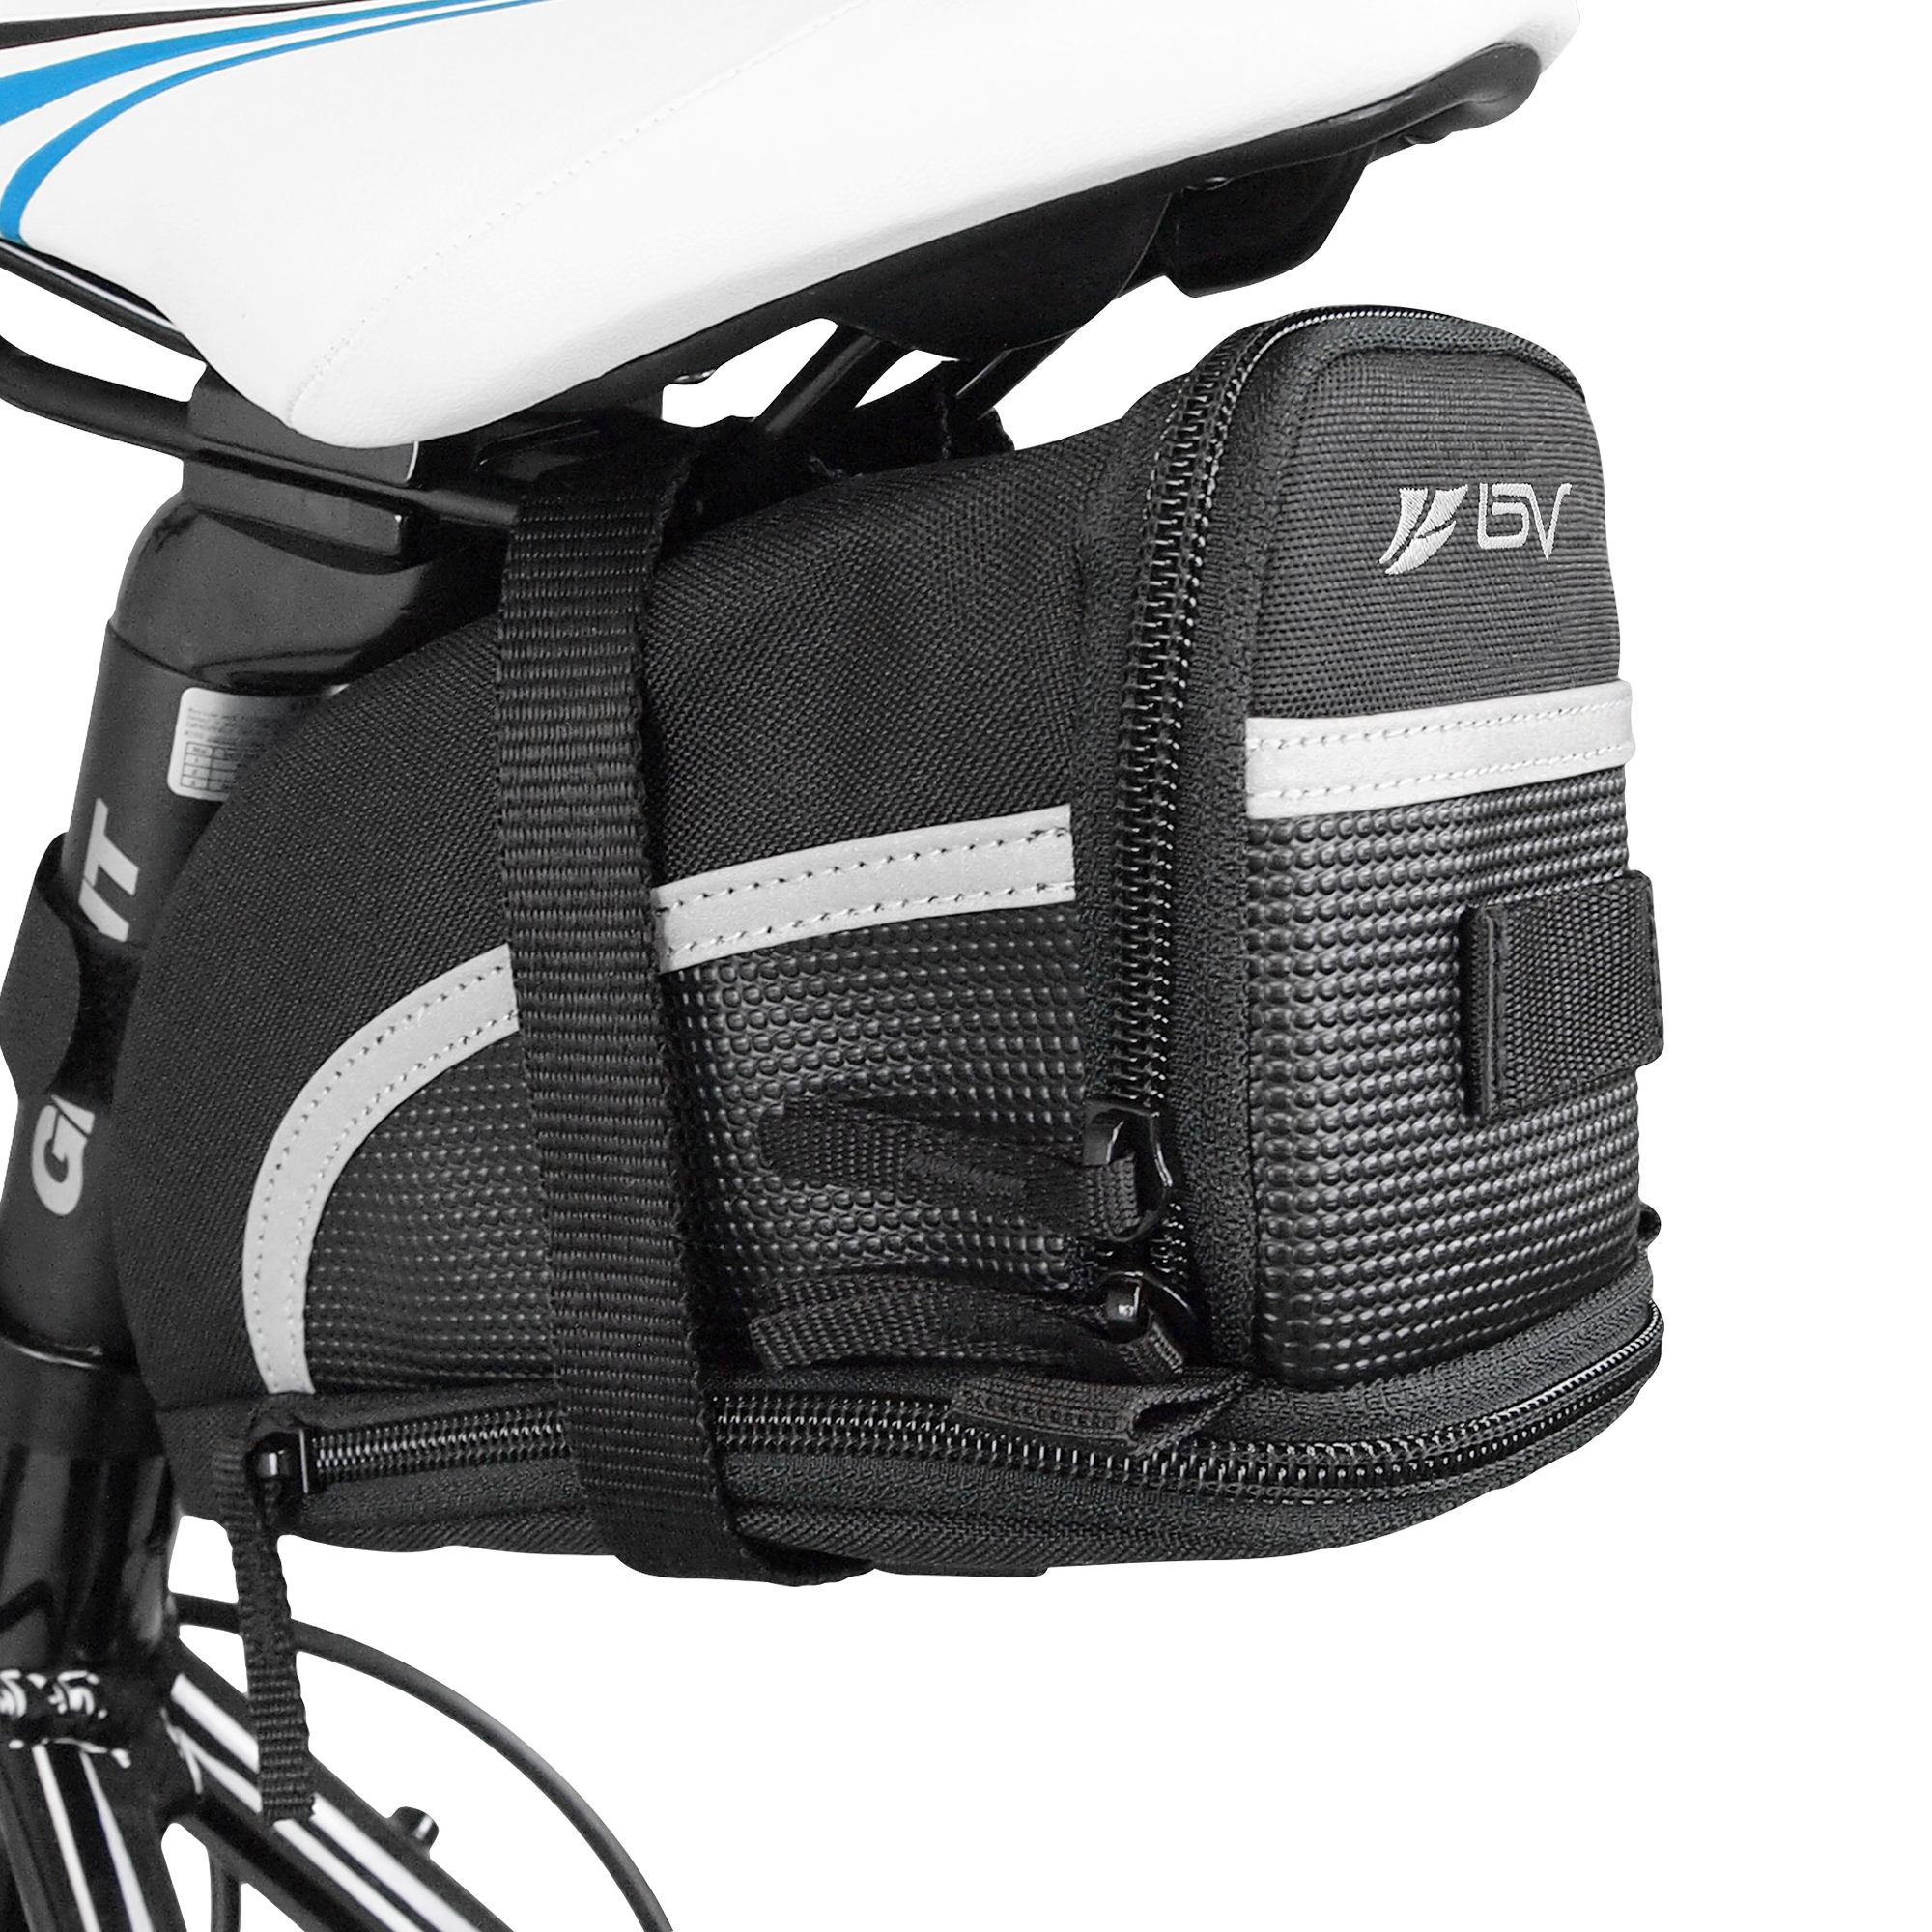 BV Bicycle Strap-On Saddle/Seat Bag Large Black